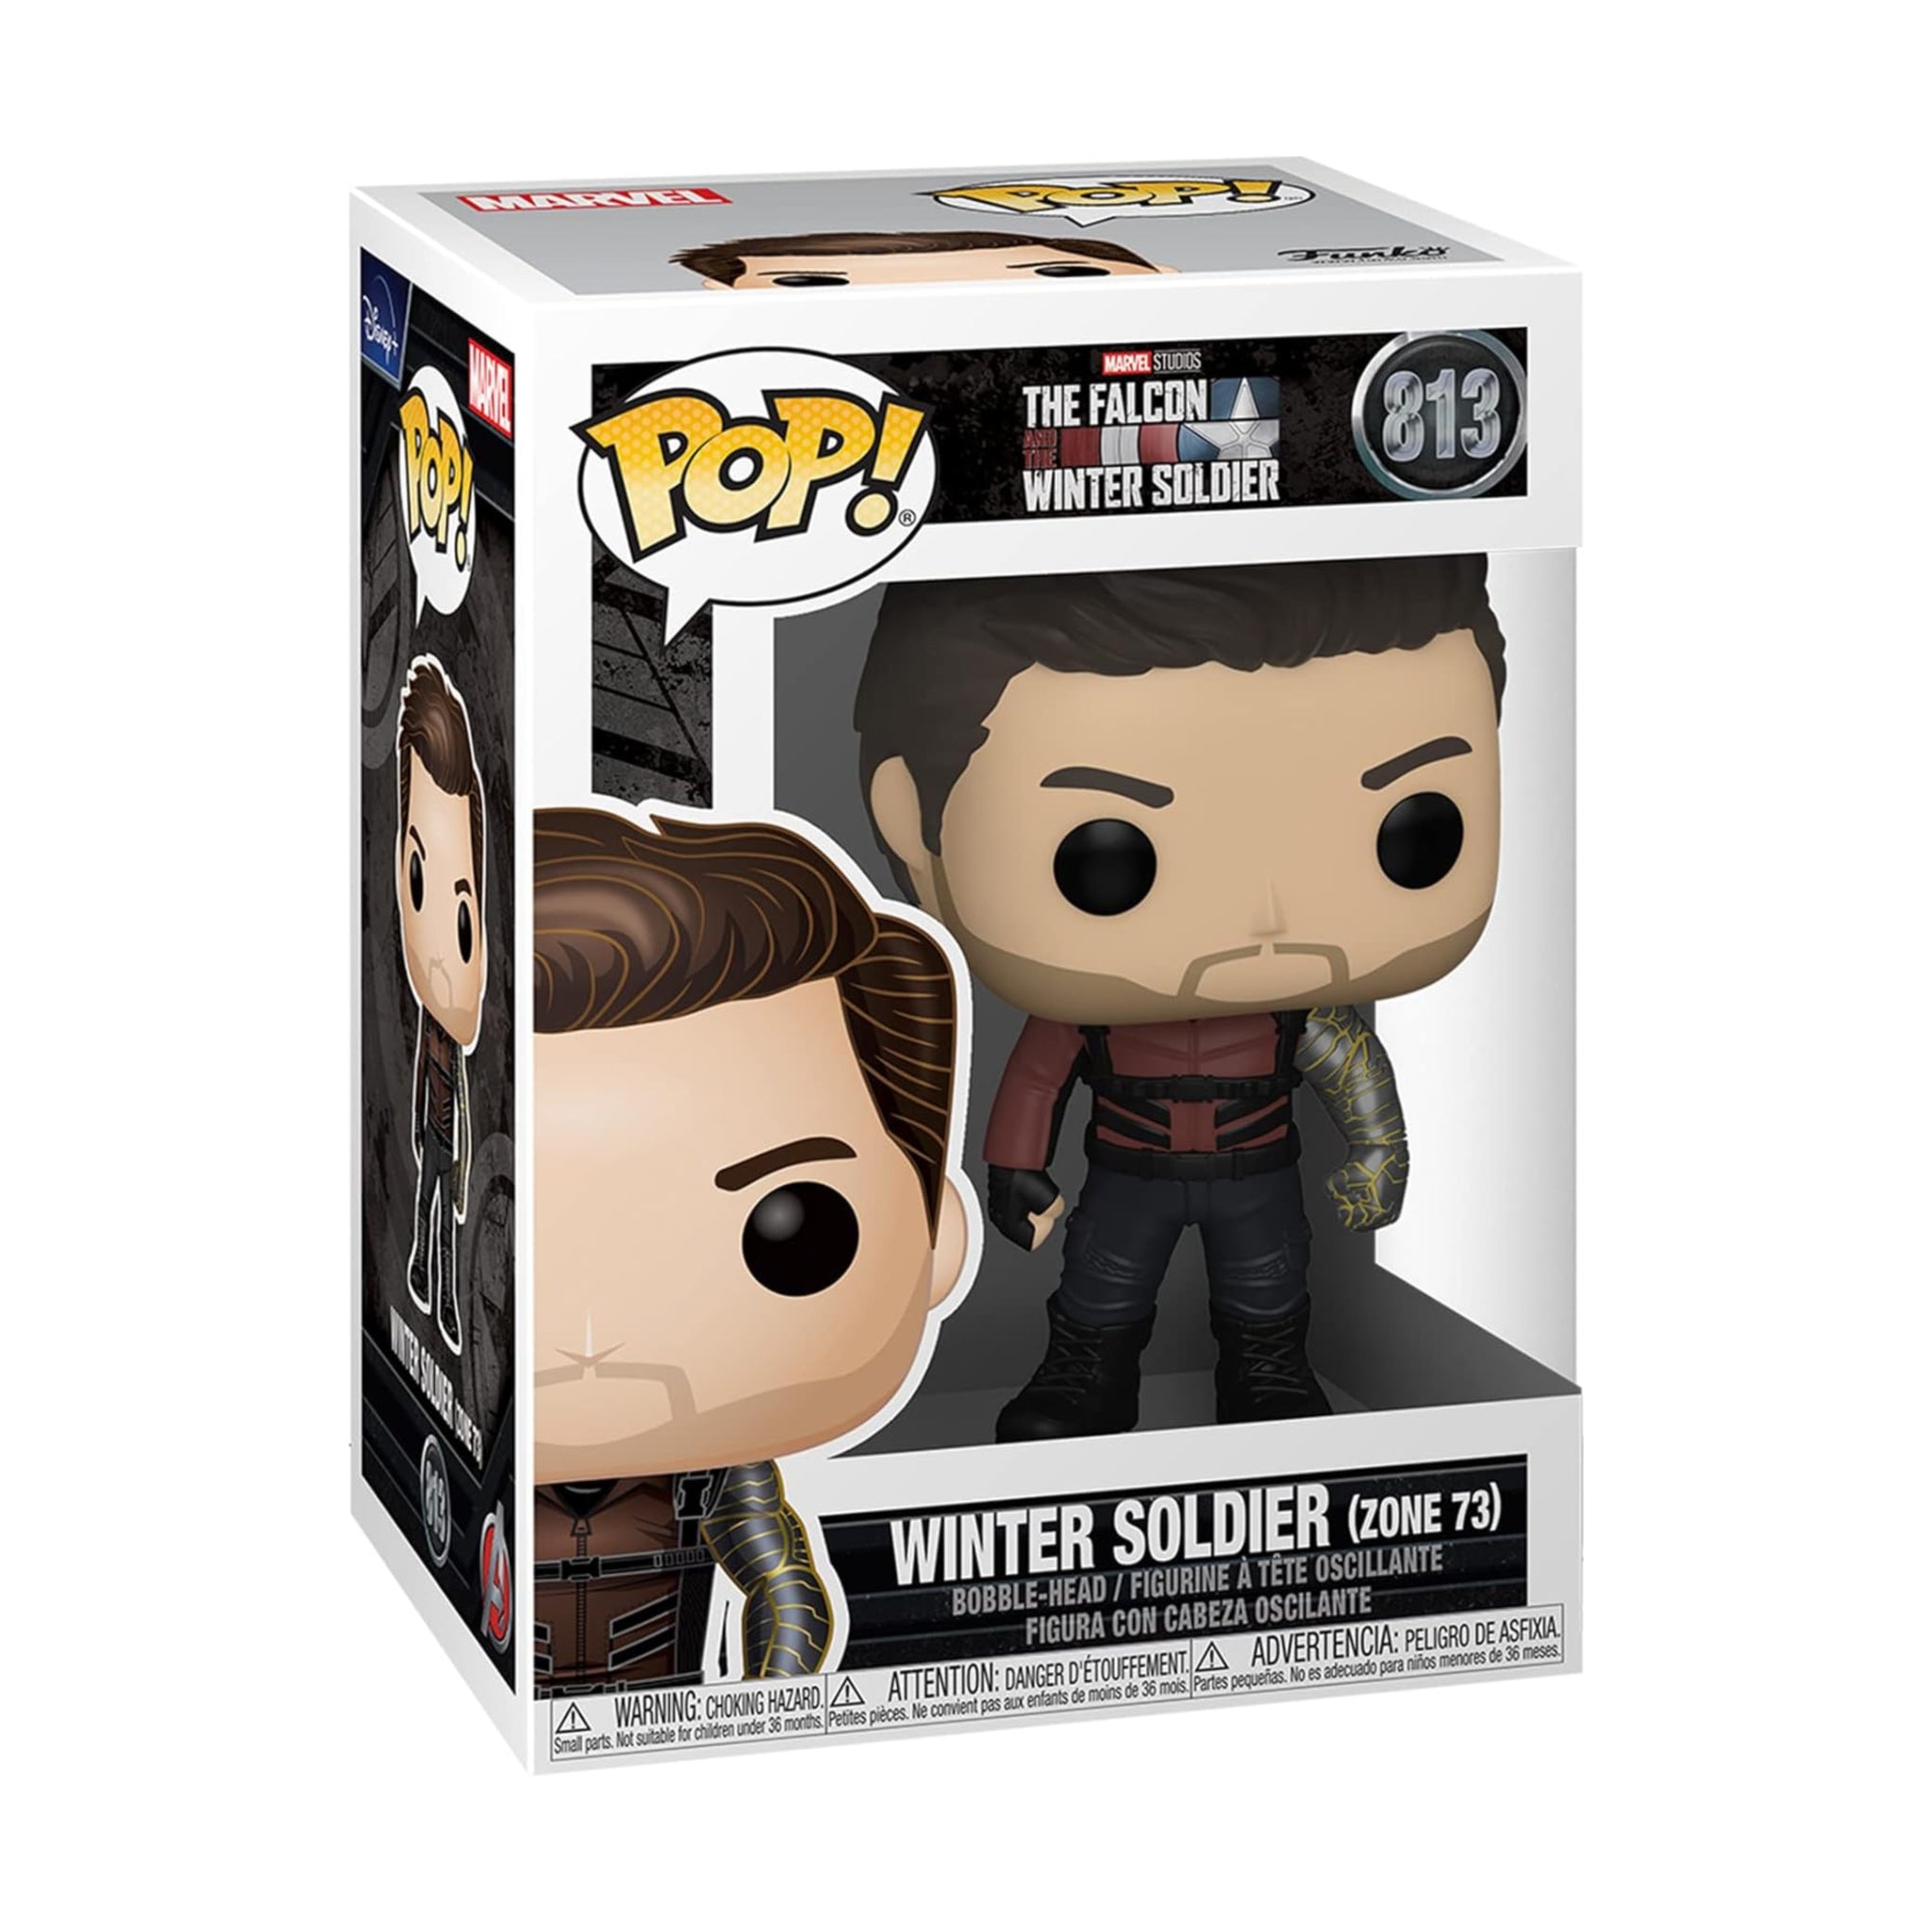 Winter Soldier Funko Pop!